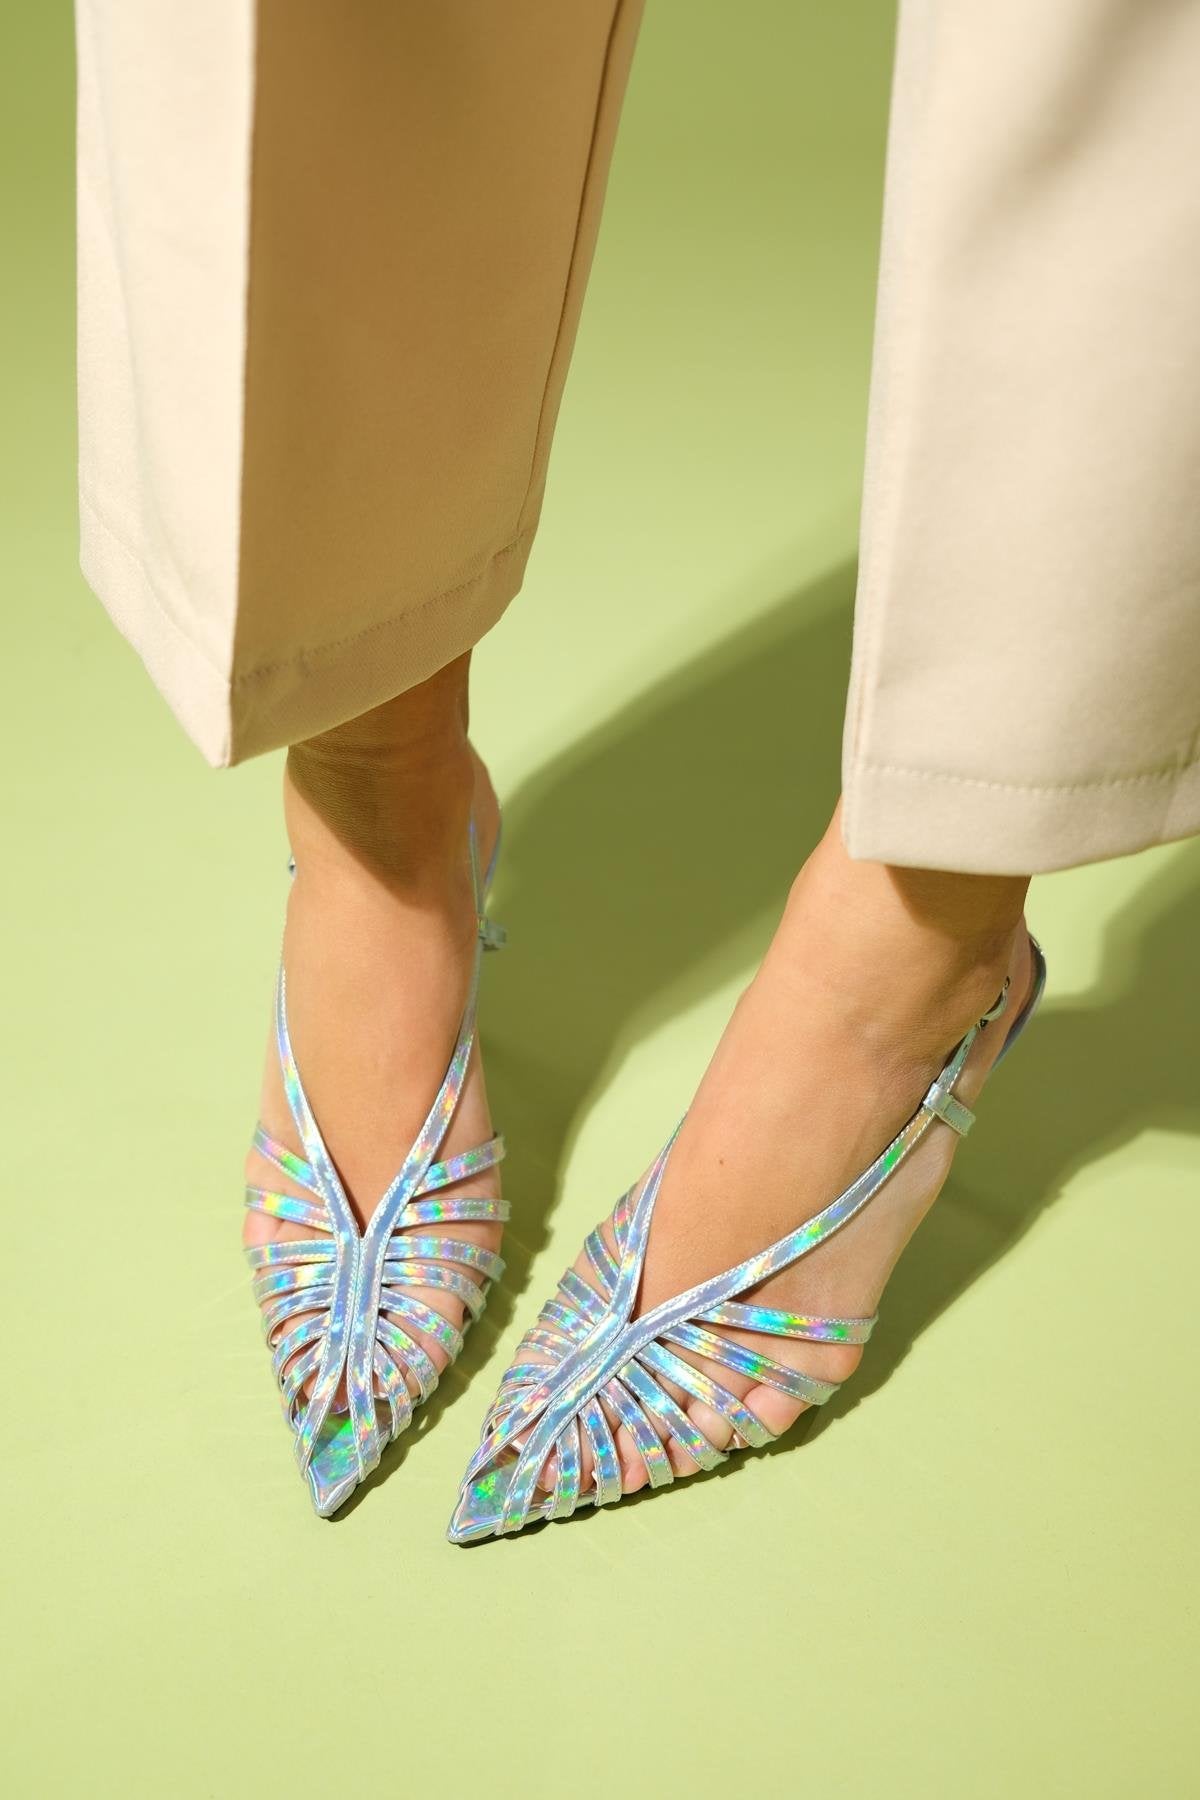 LEAF Silver Hologram Women's High Heels Shoes